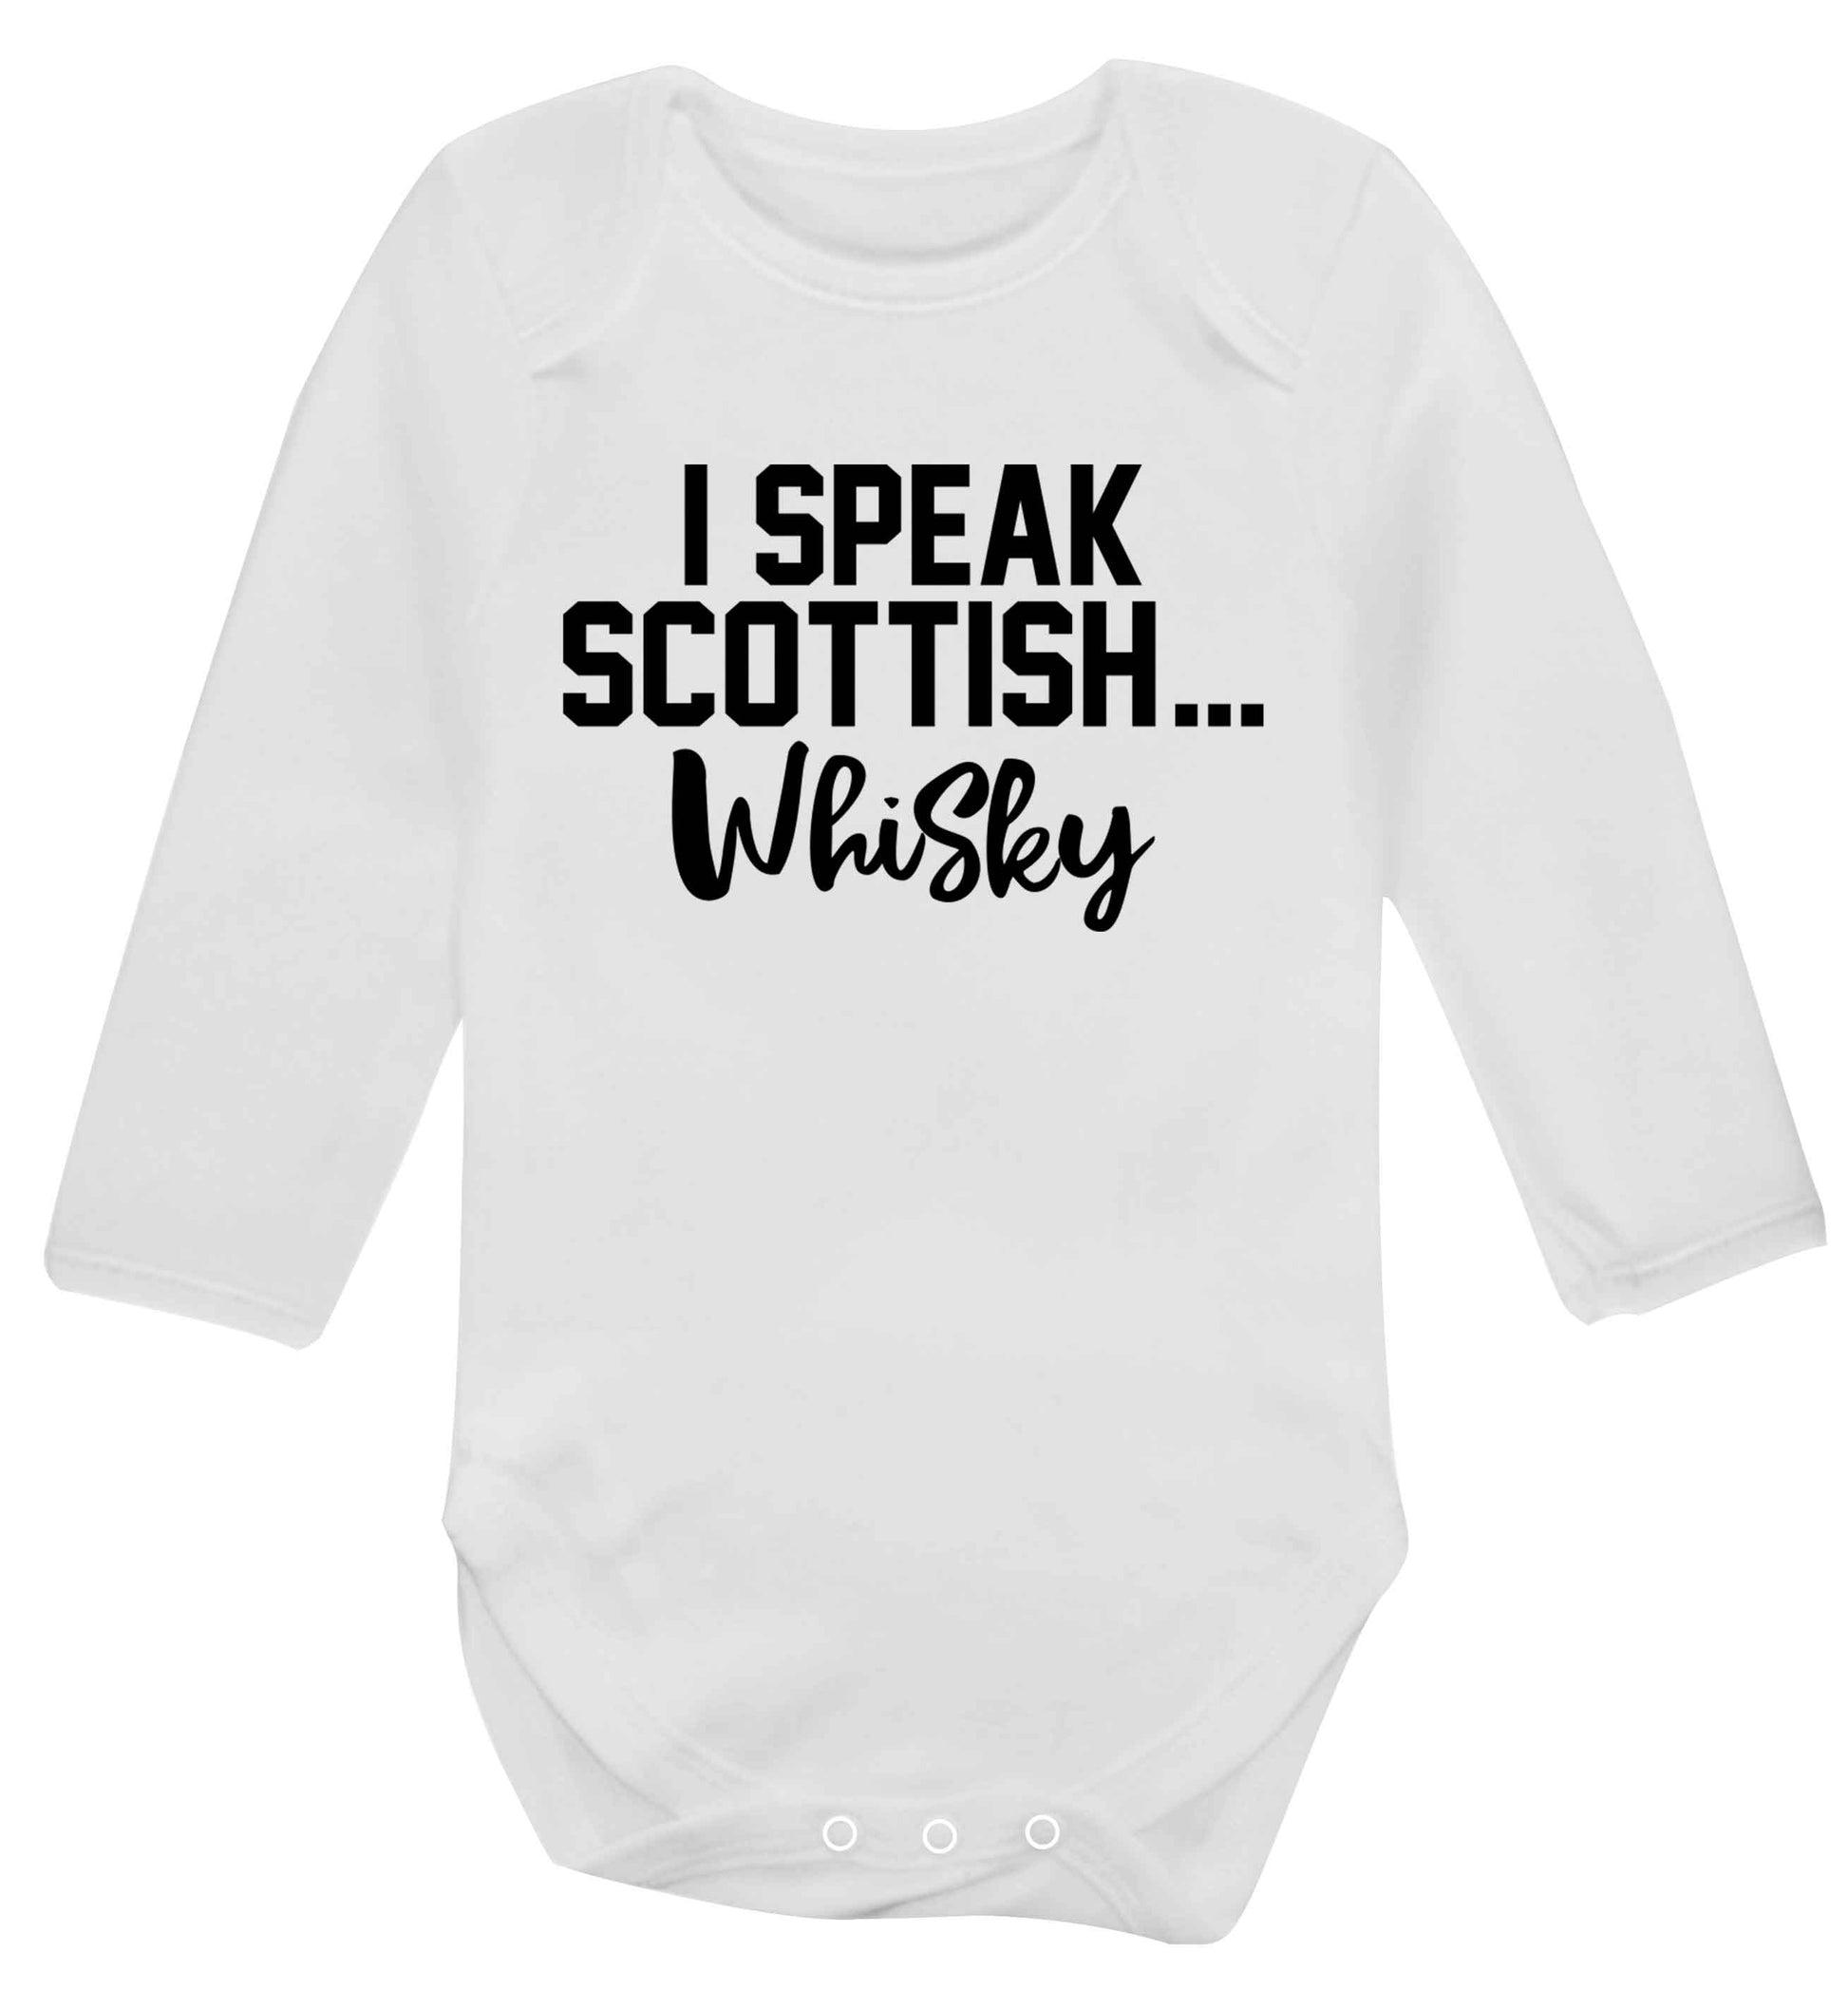 I speak scottish...whisky Baby Vest long sleeved white 6-12 months